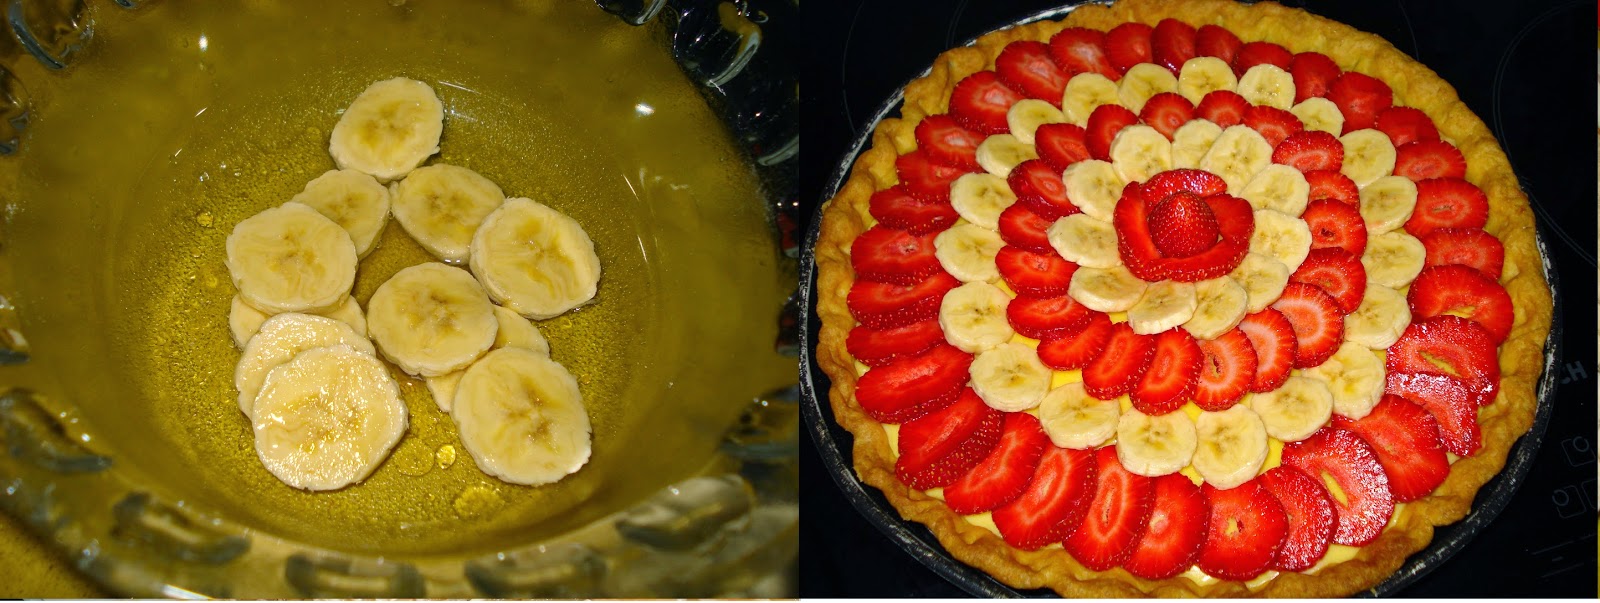 Tarta De Fresas Y Plátanos
